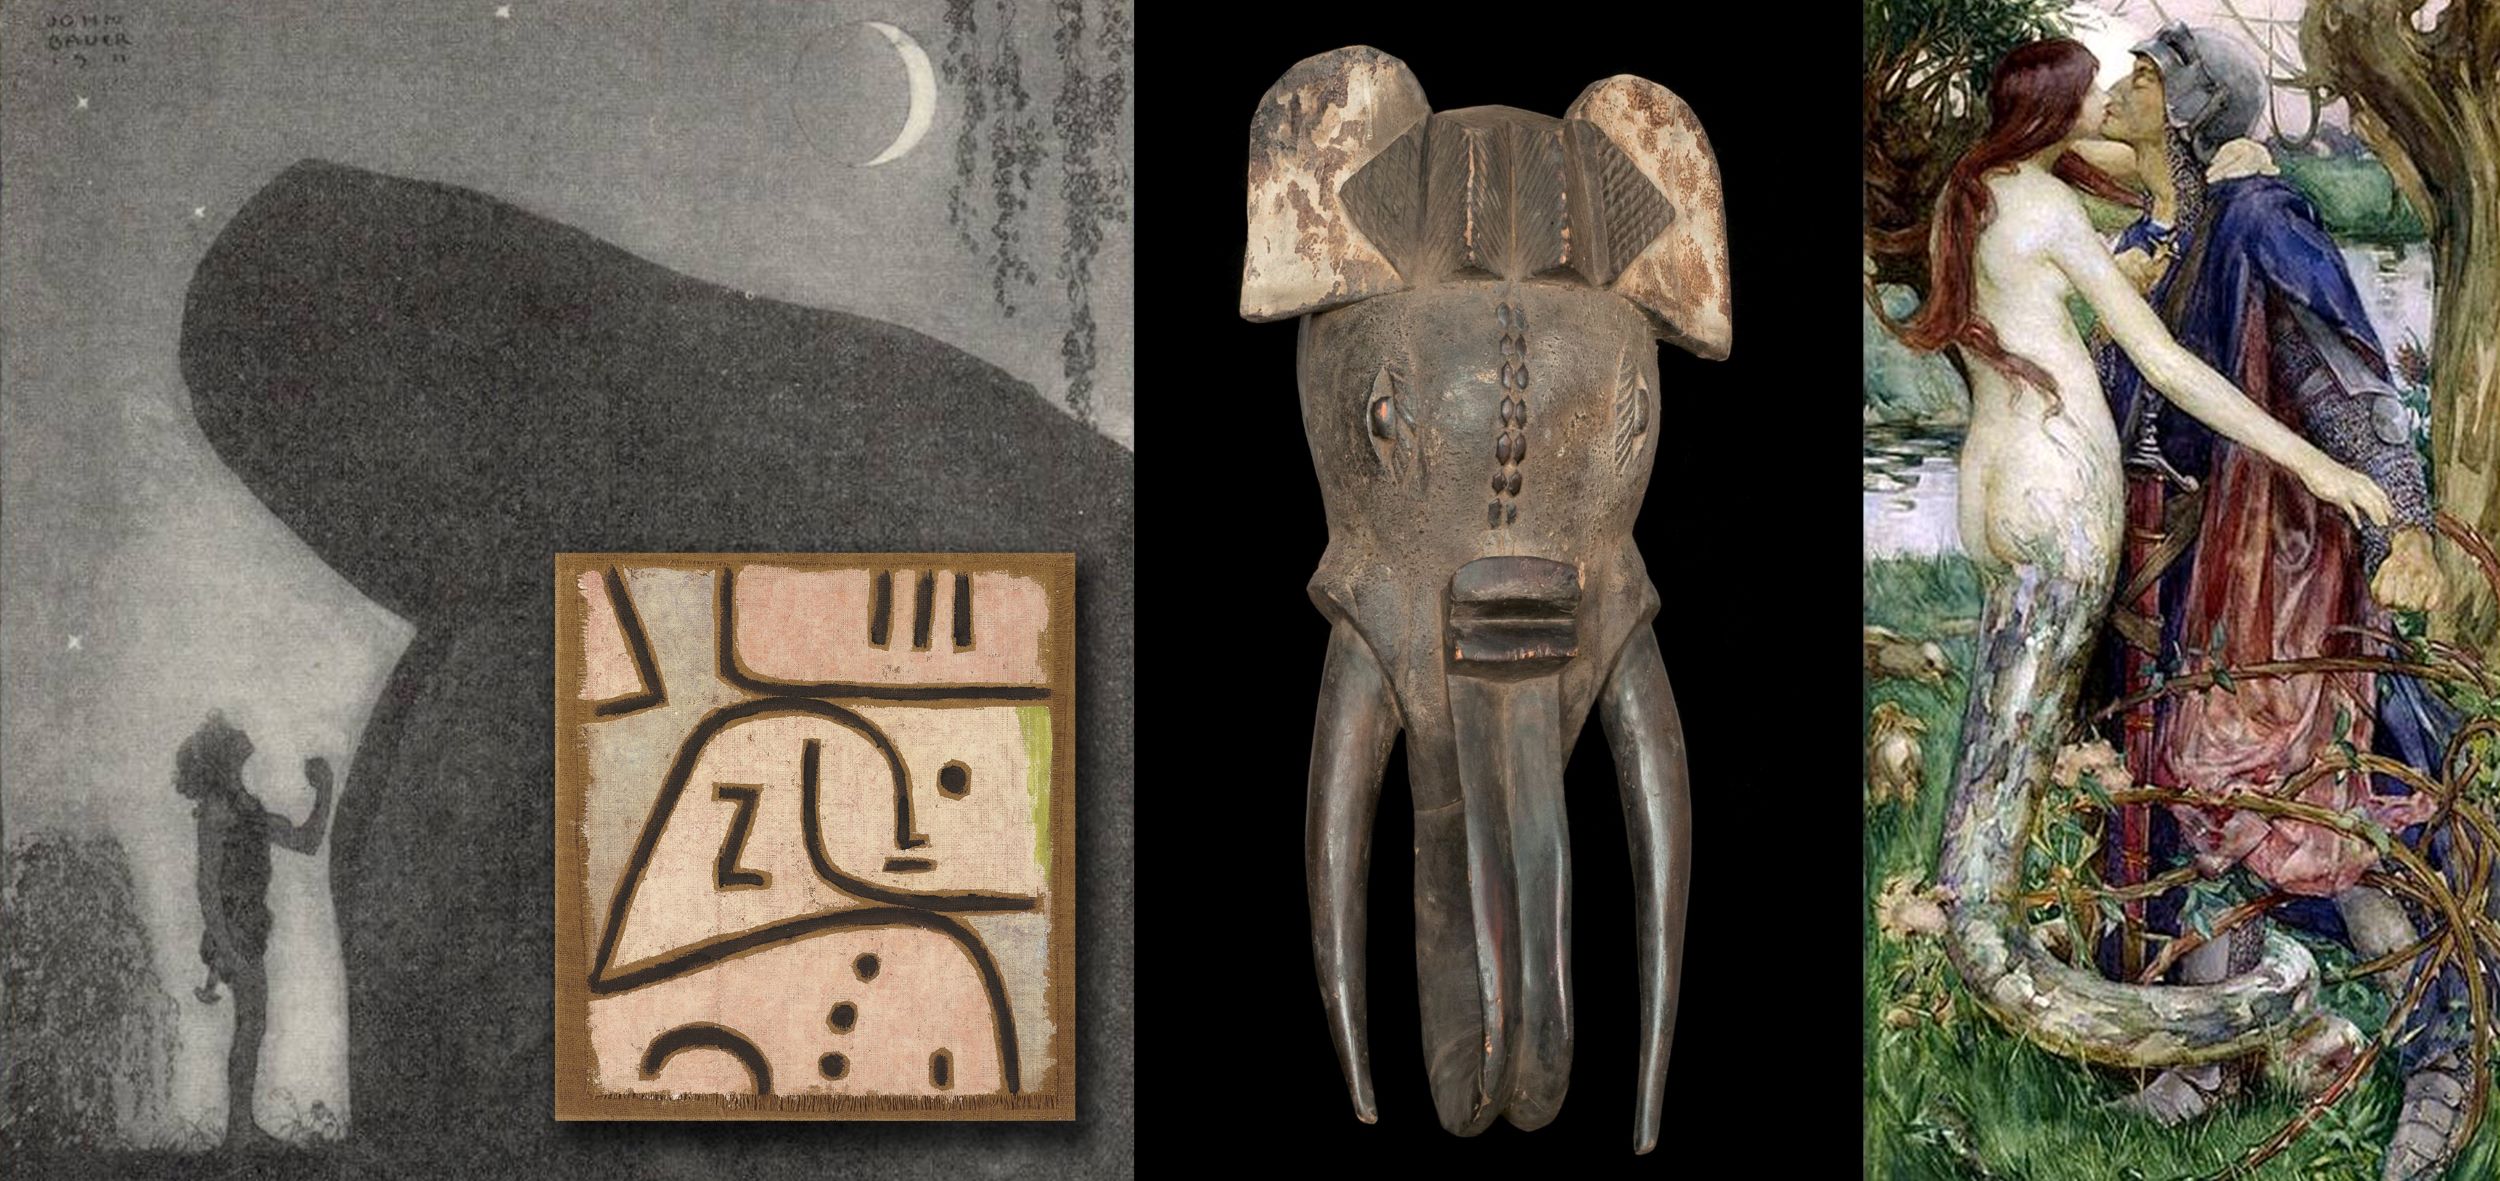 Collage: 'Vølven Groa' af John Bauer, 1911 (pb); 'WI (In Memoriam)' af Paul Klee, 1938 (pb); afrikansk maske fotograferet af Roman Bonnefoy (CC BY 4.0); 'The Knight and the Mermaid' af Isobel Lilian Gloag, 1890 (pb)